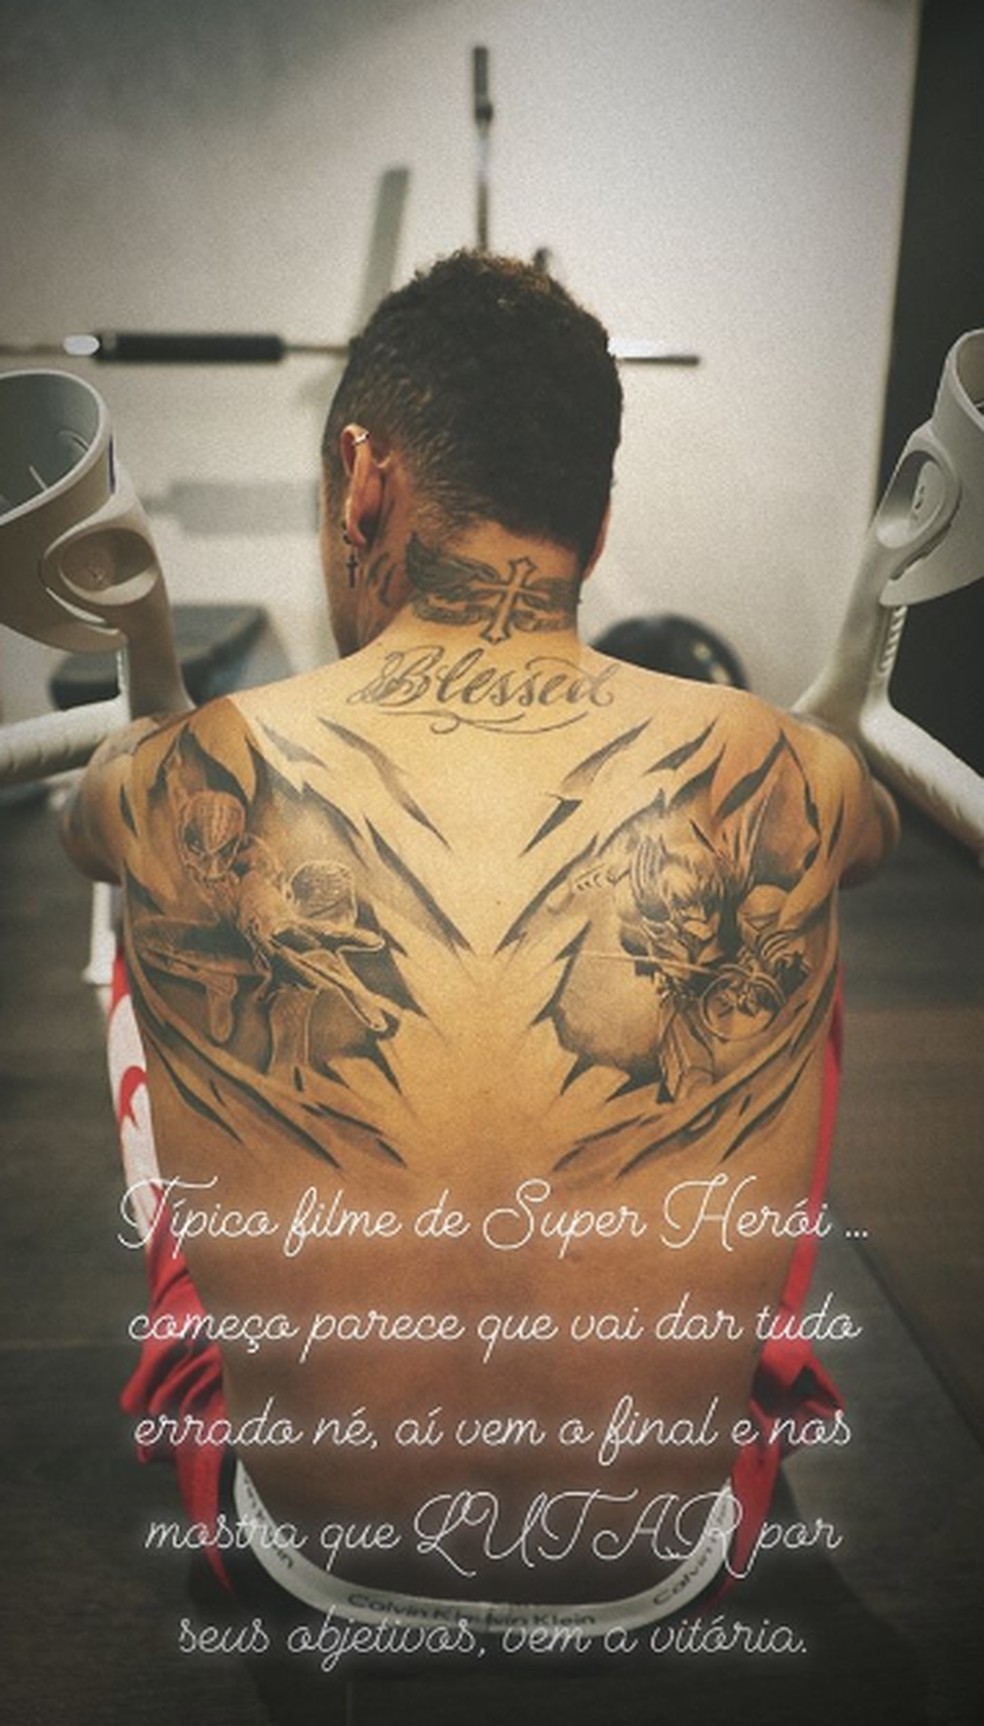 Neymar publica mensagem em rede social após lesão — Foto: Reprodução/Intagram